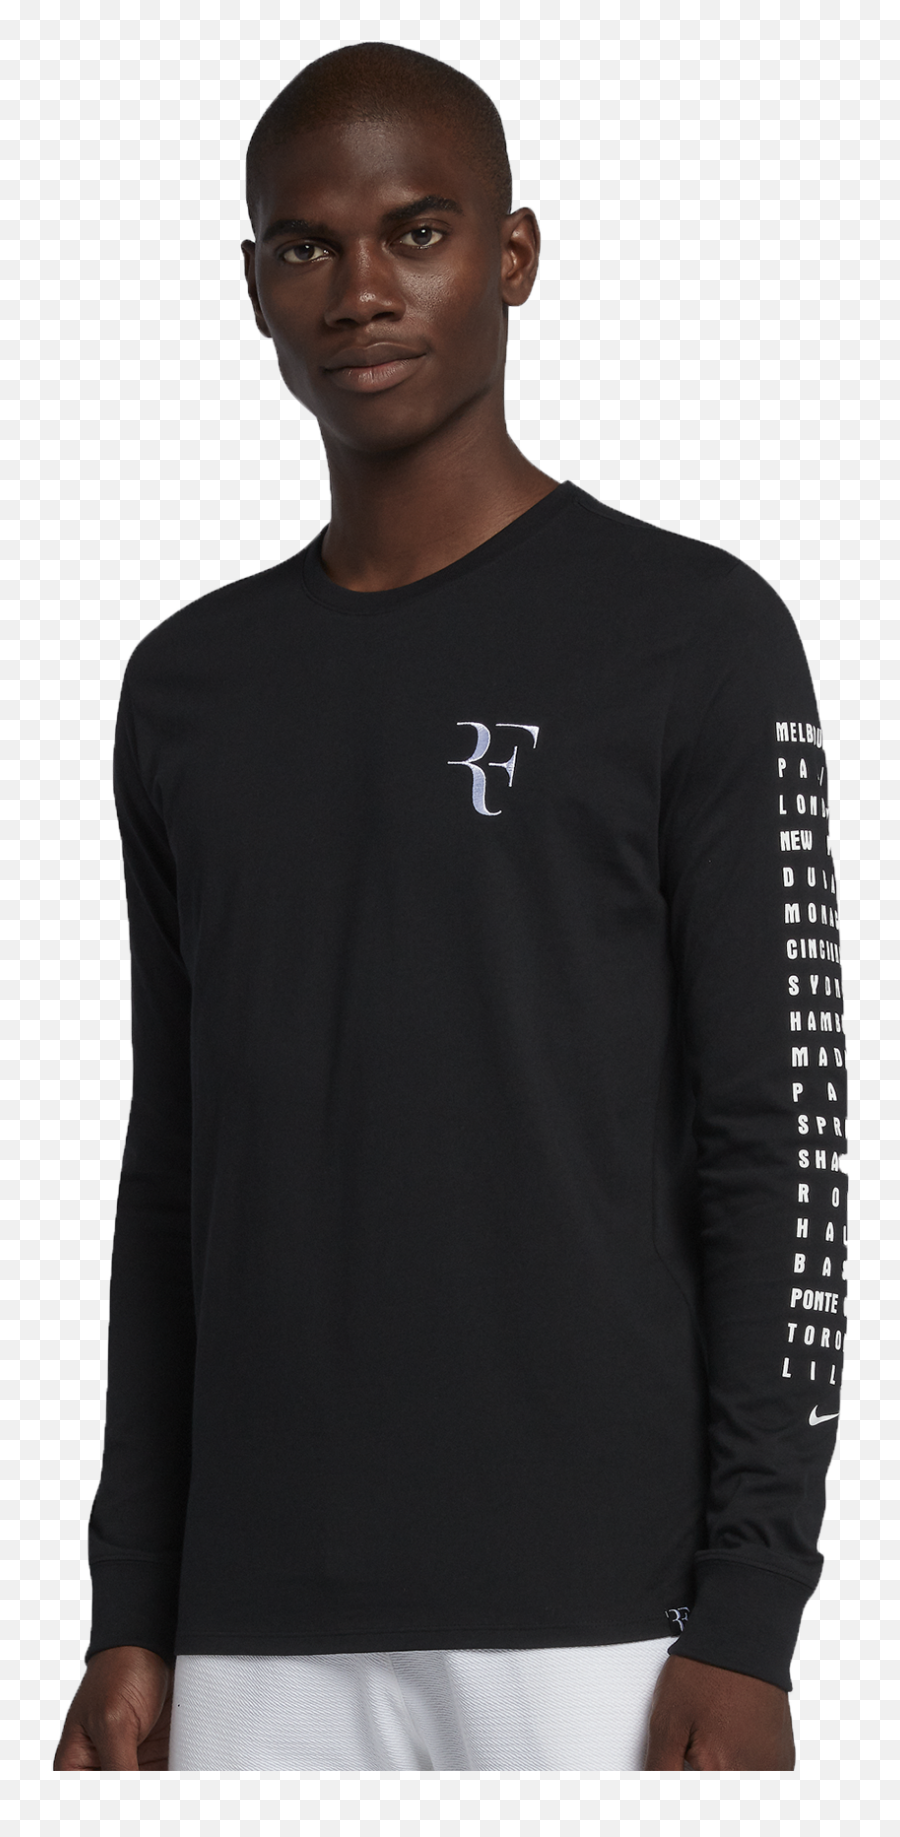 Nike Rf T Shirt - Roger Federer Rf Emoji,Roger Federer Emoji